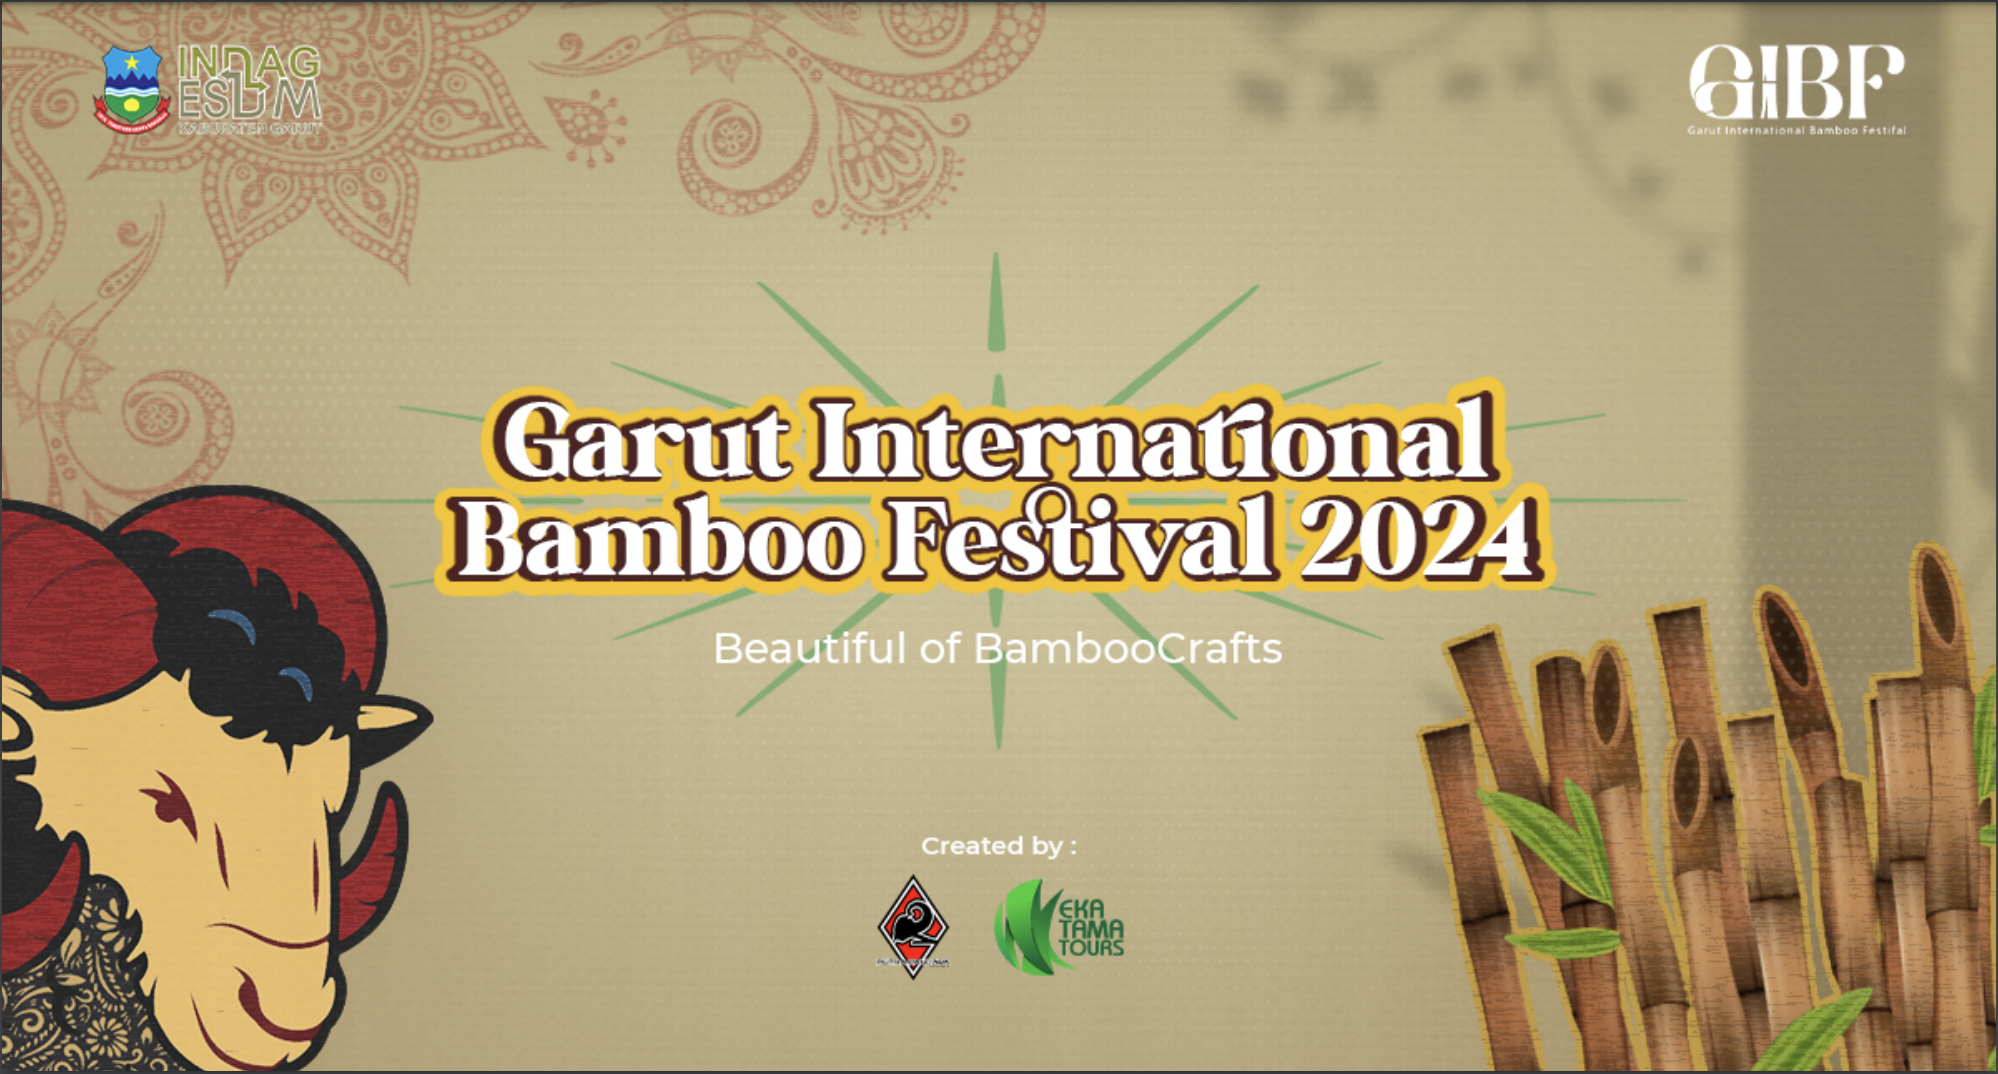 Garut International Bamboo Festival 2024 "Beautiful of Bamboo Crafts"